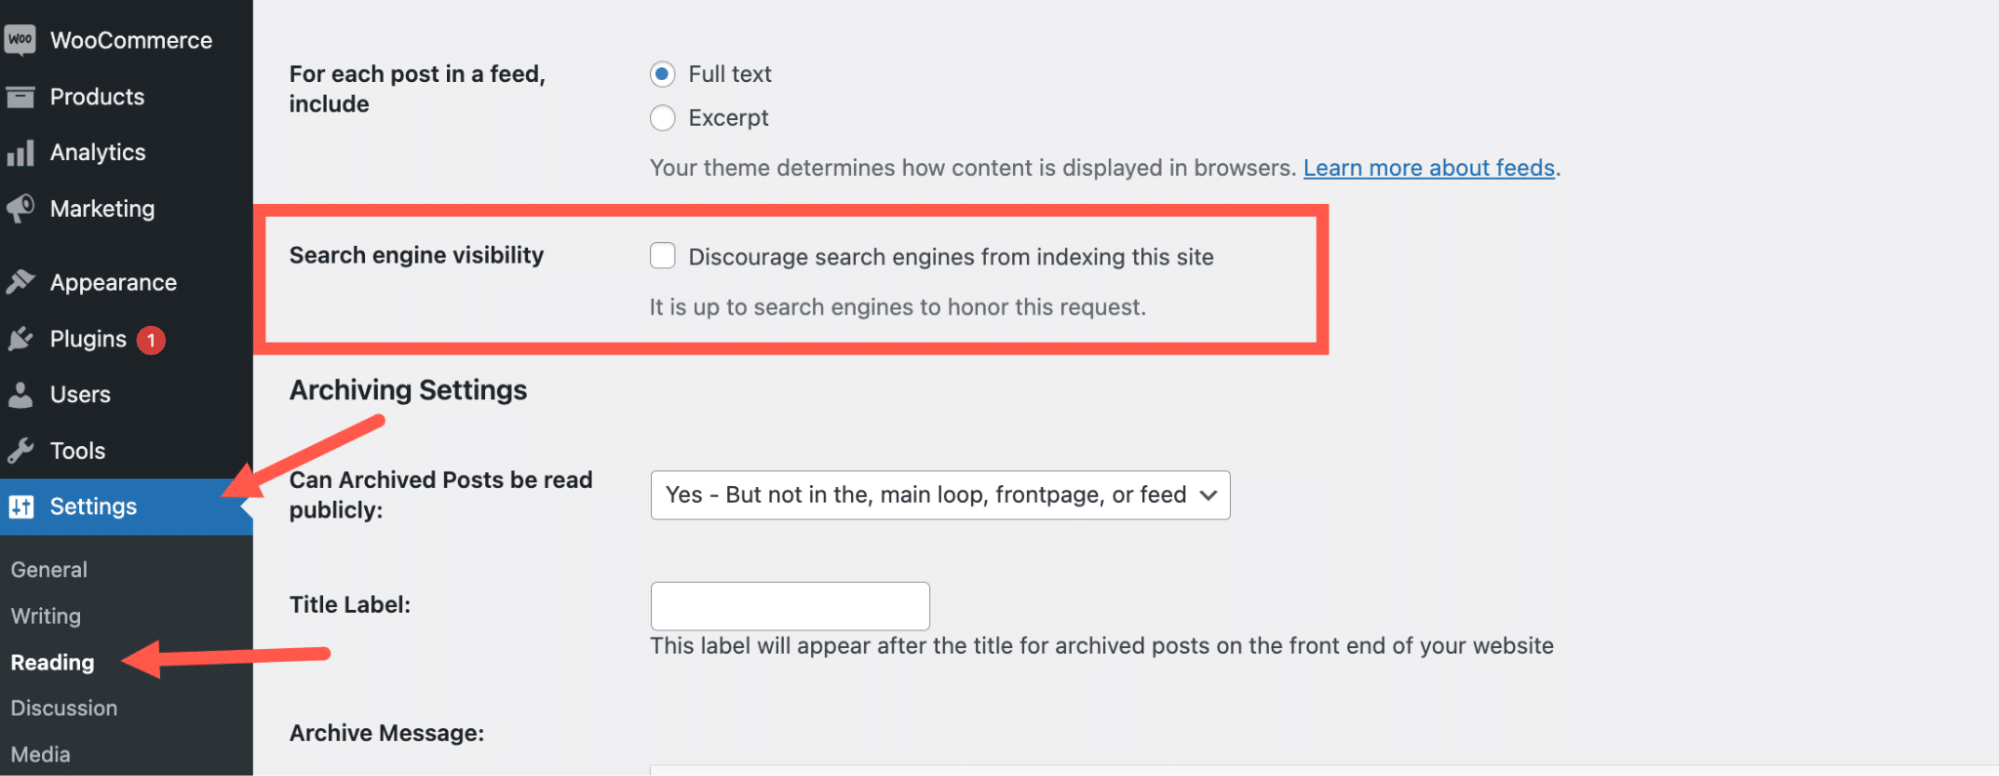 Schermata delle impostazioni di lettura di WordPress per scoraggiare l'indicizzazione del sito da parte dei motori di ricerca